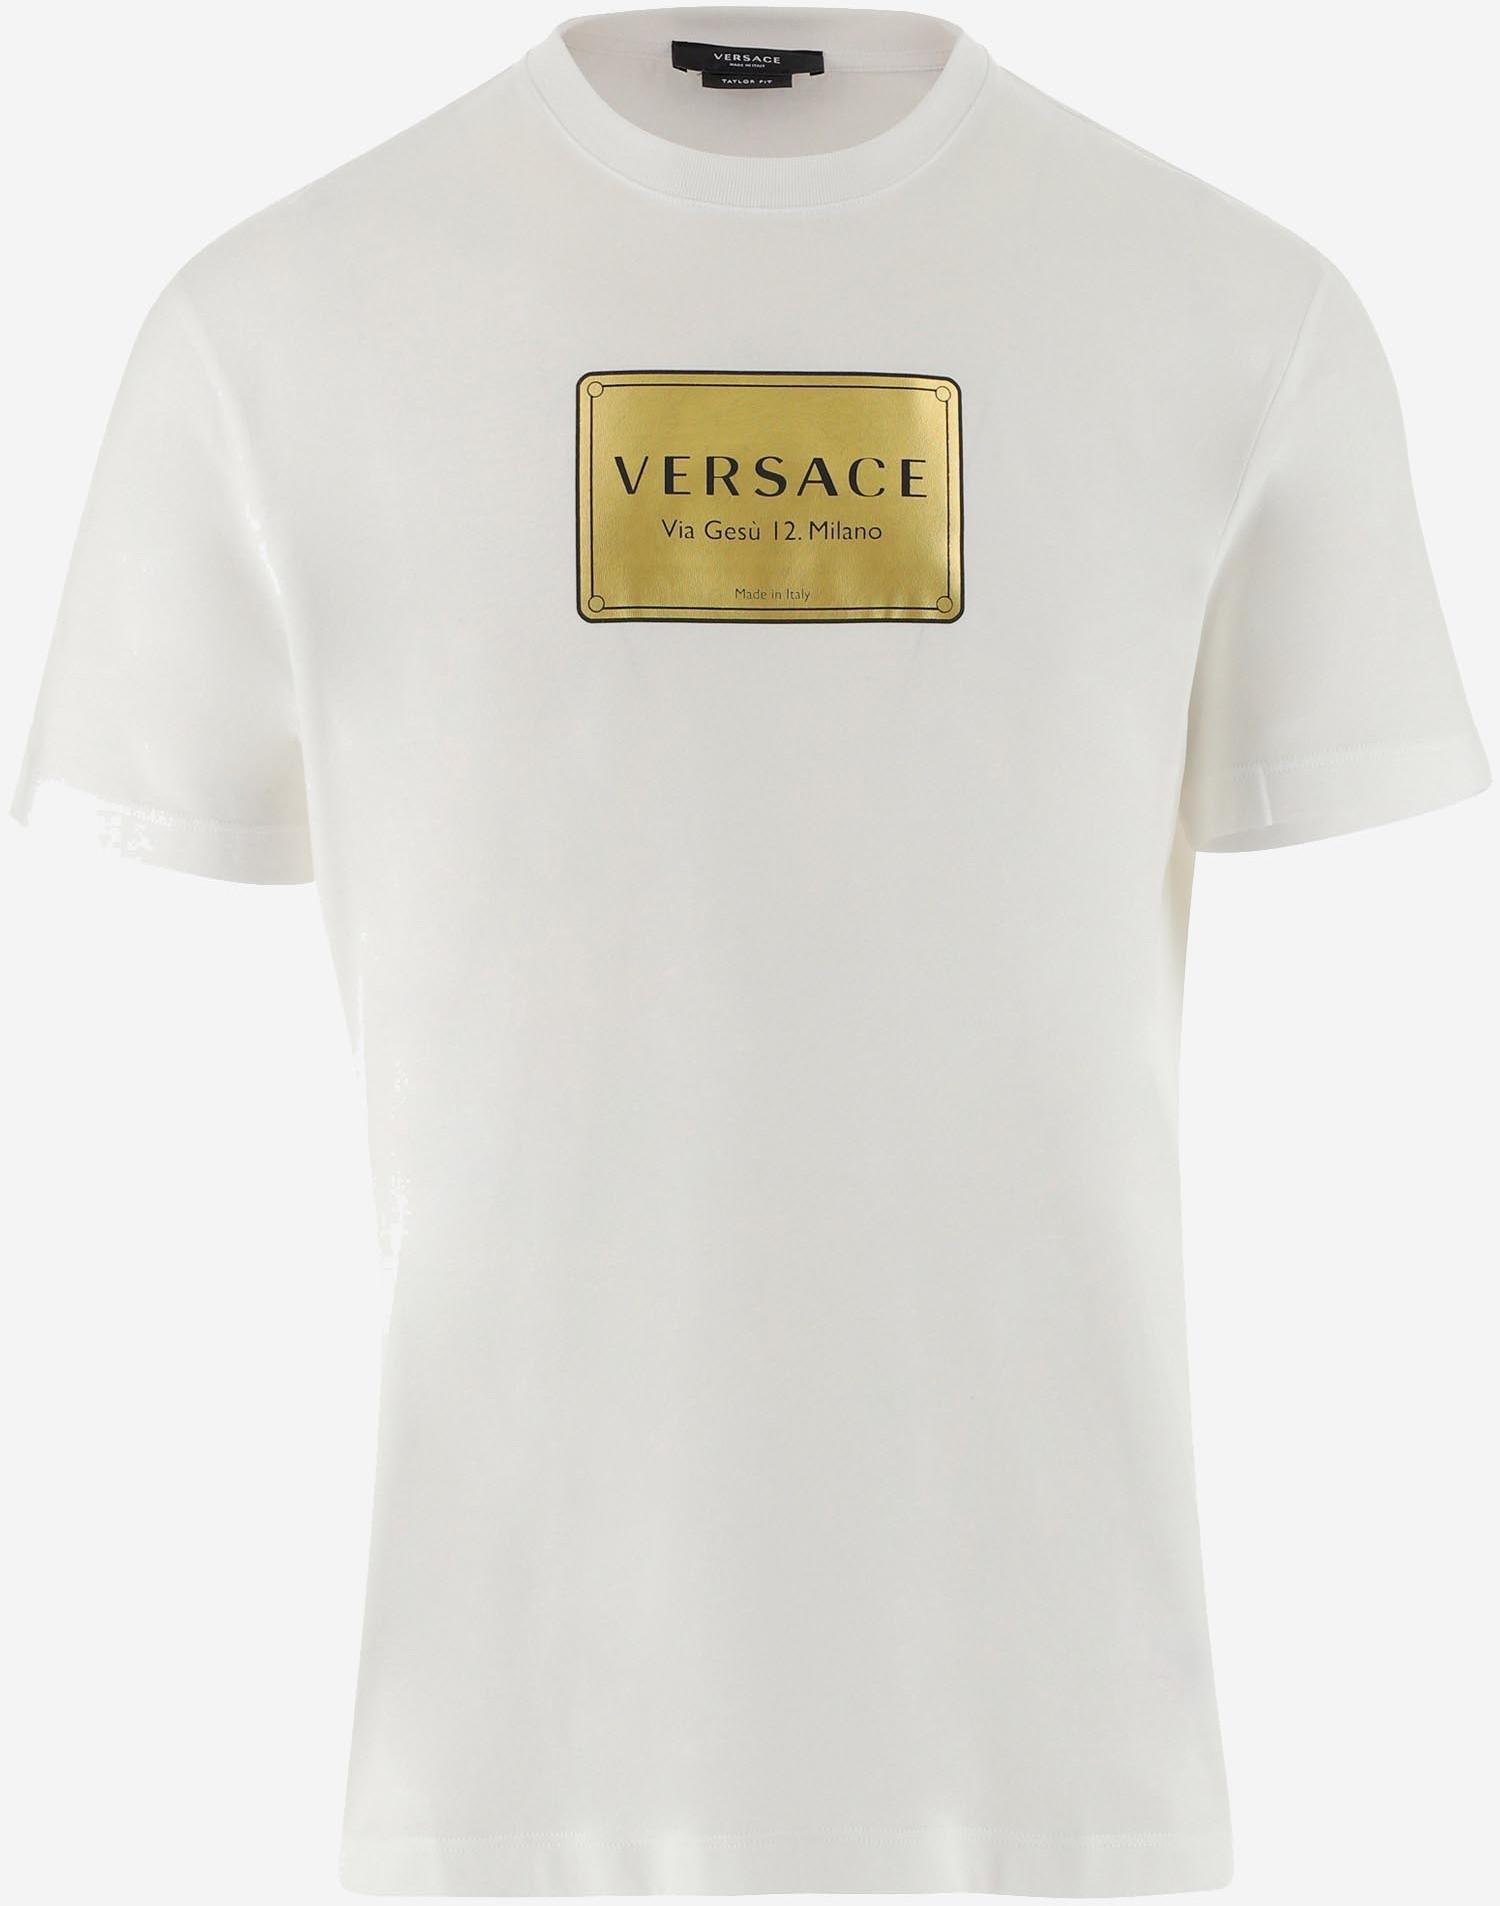 versace men's tee shirts